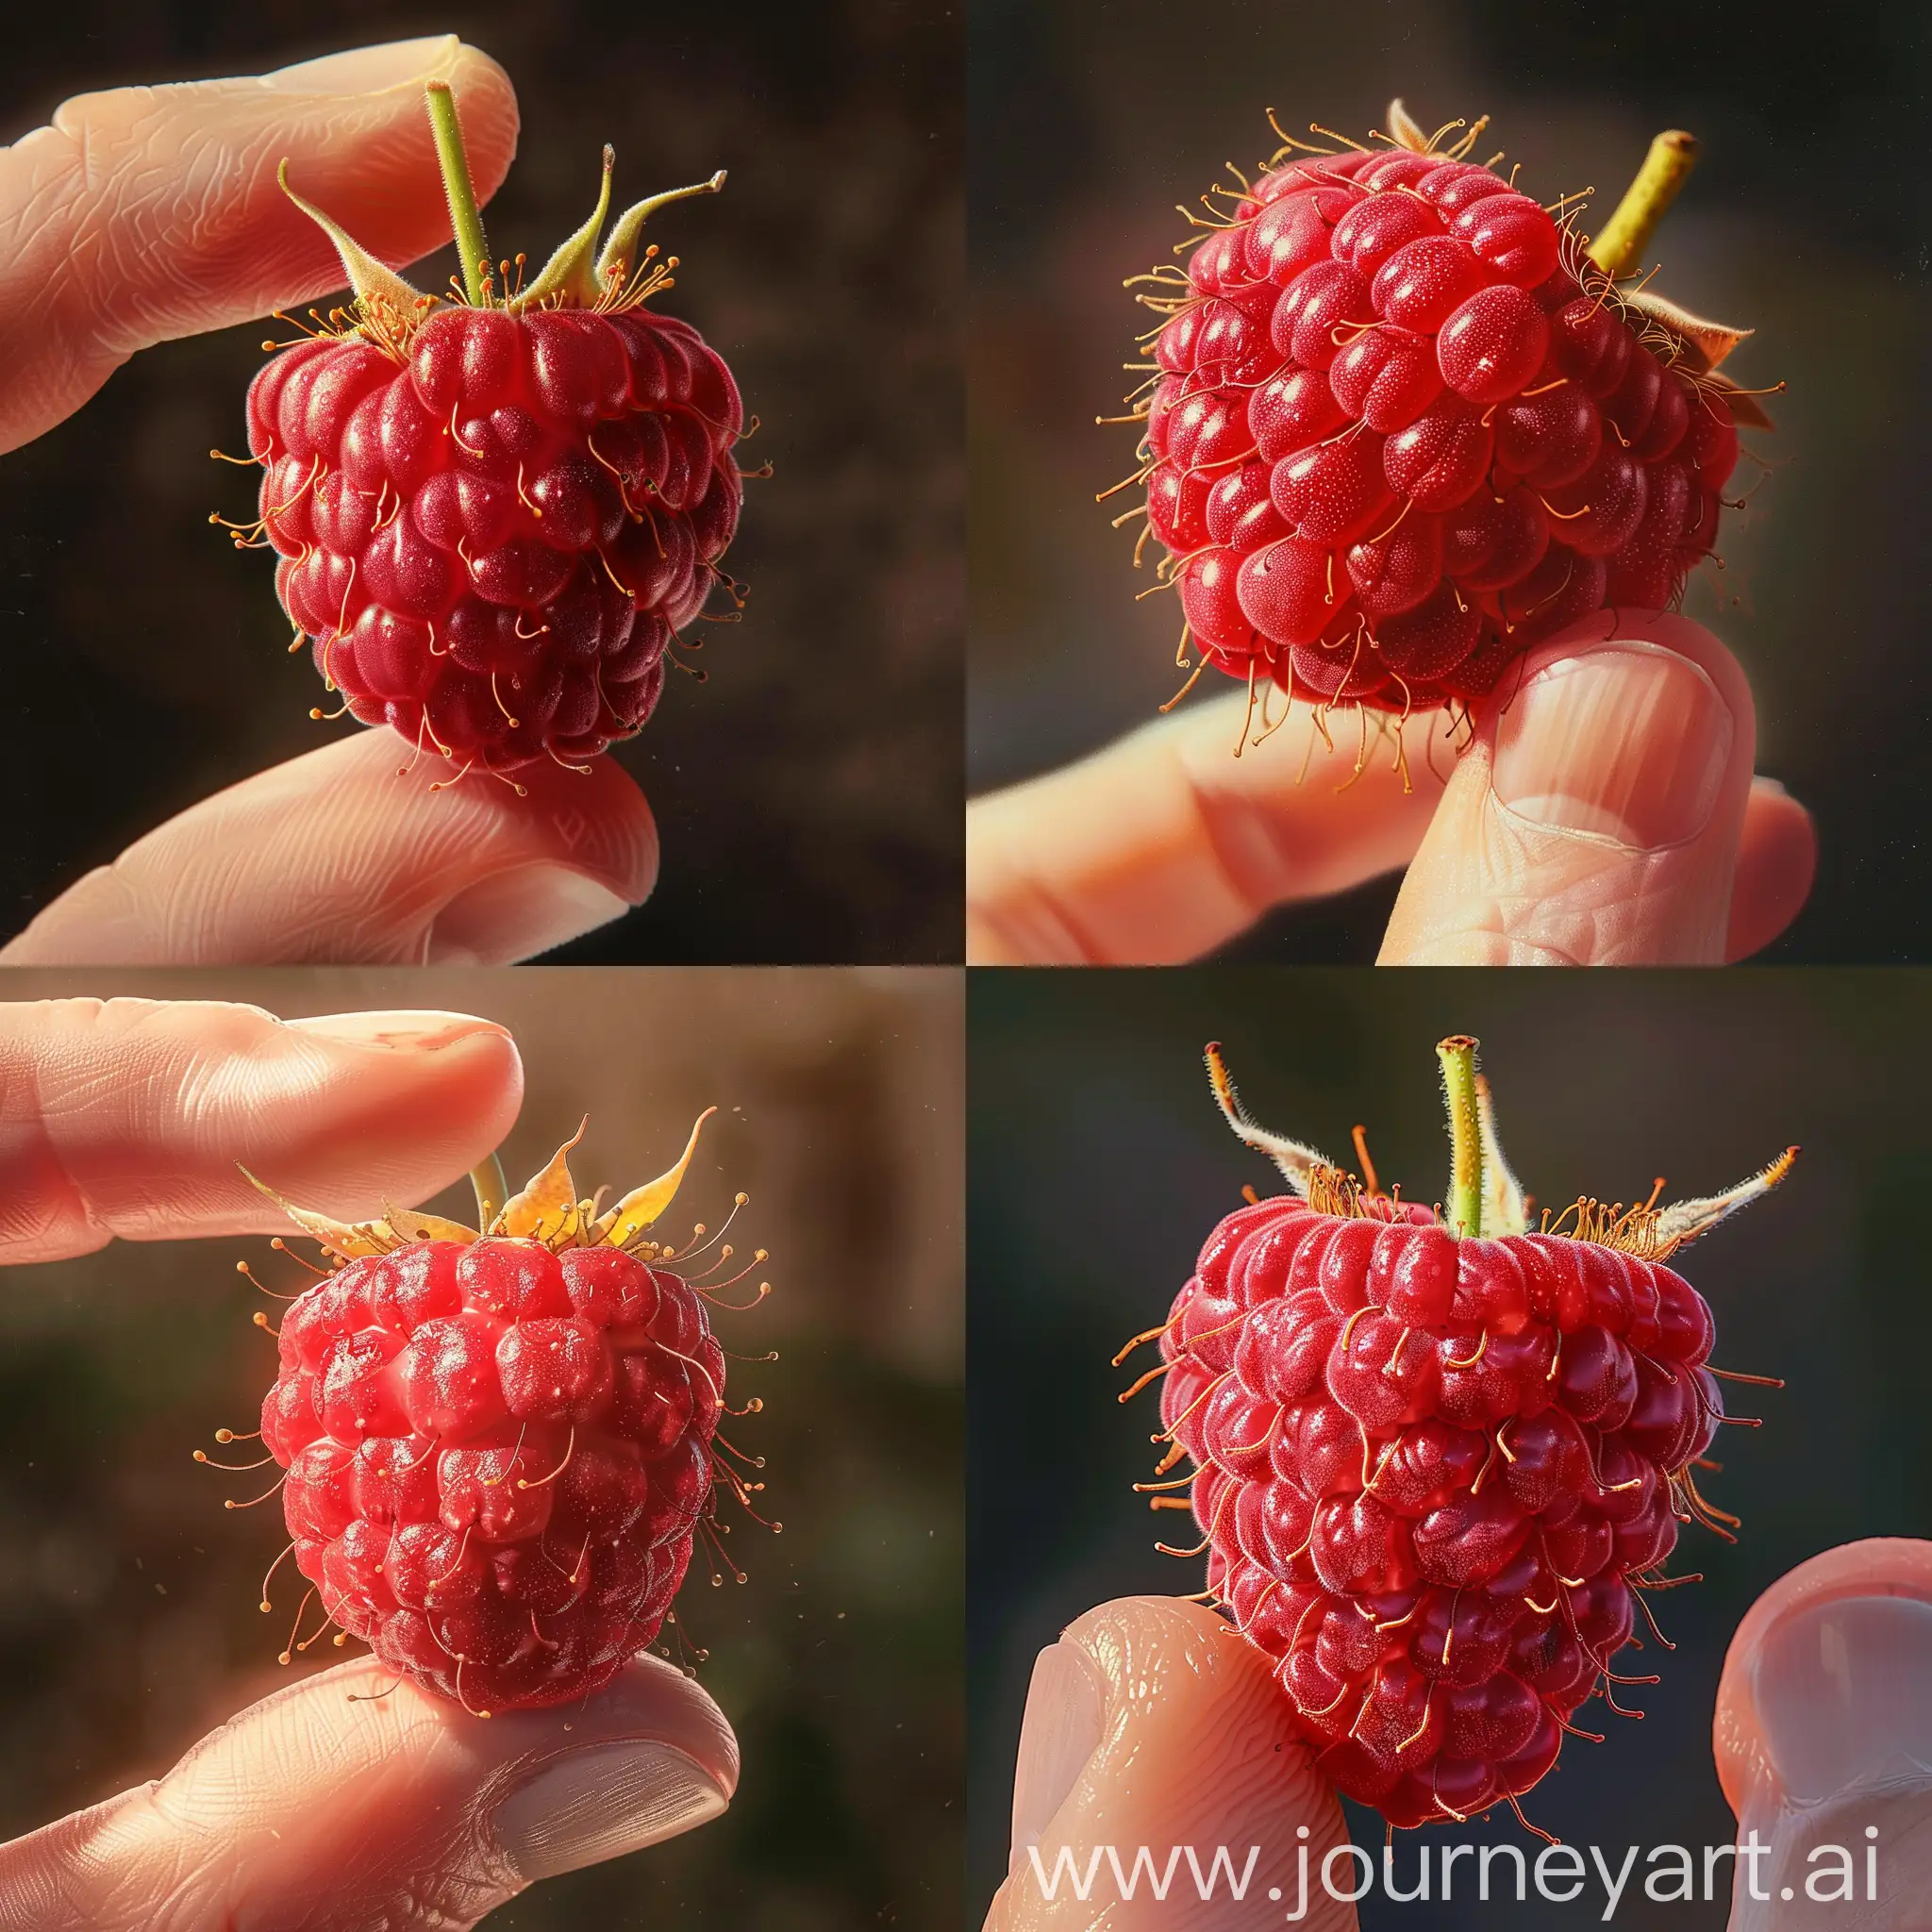 Freshly-Picked-Juicy-Raspberry-Held-Tenderly